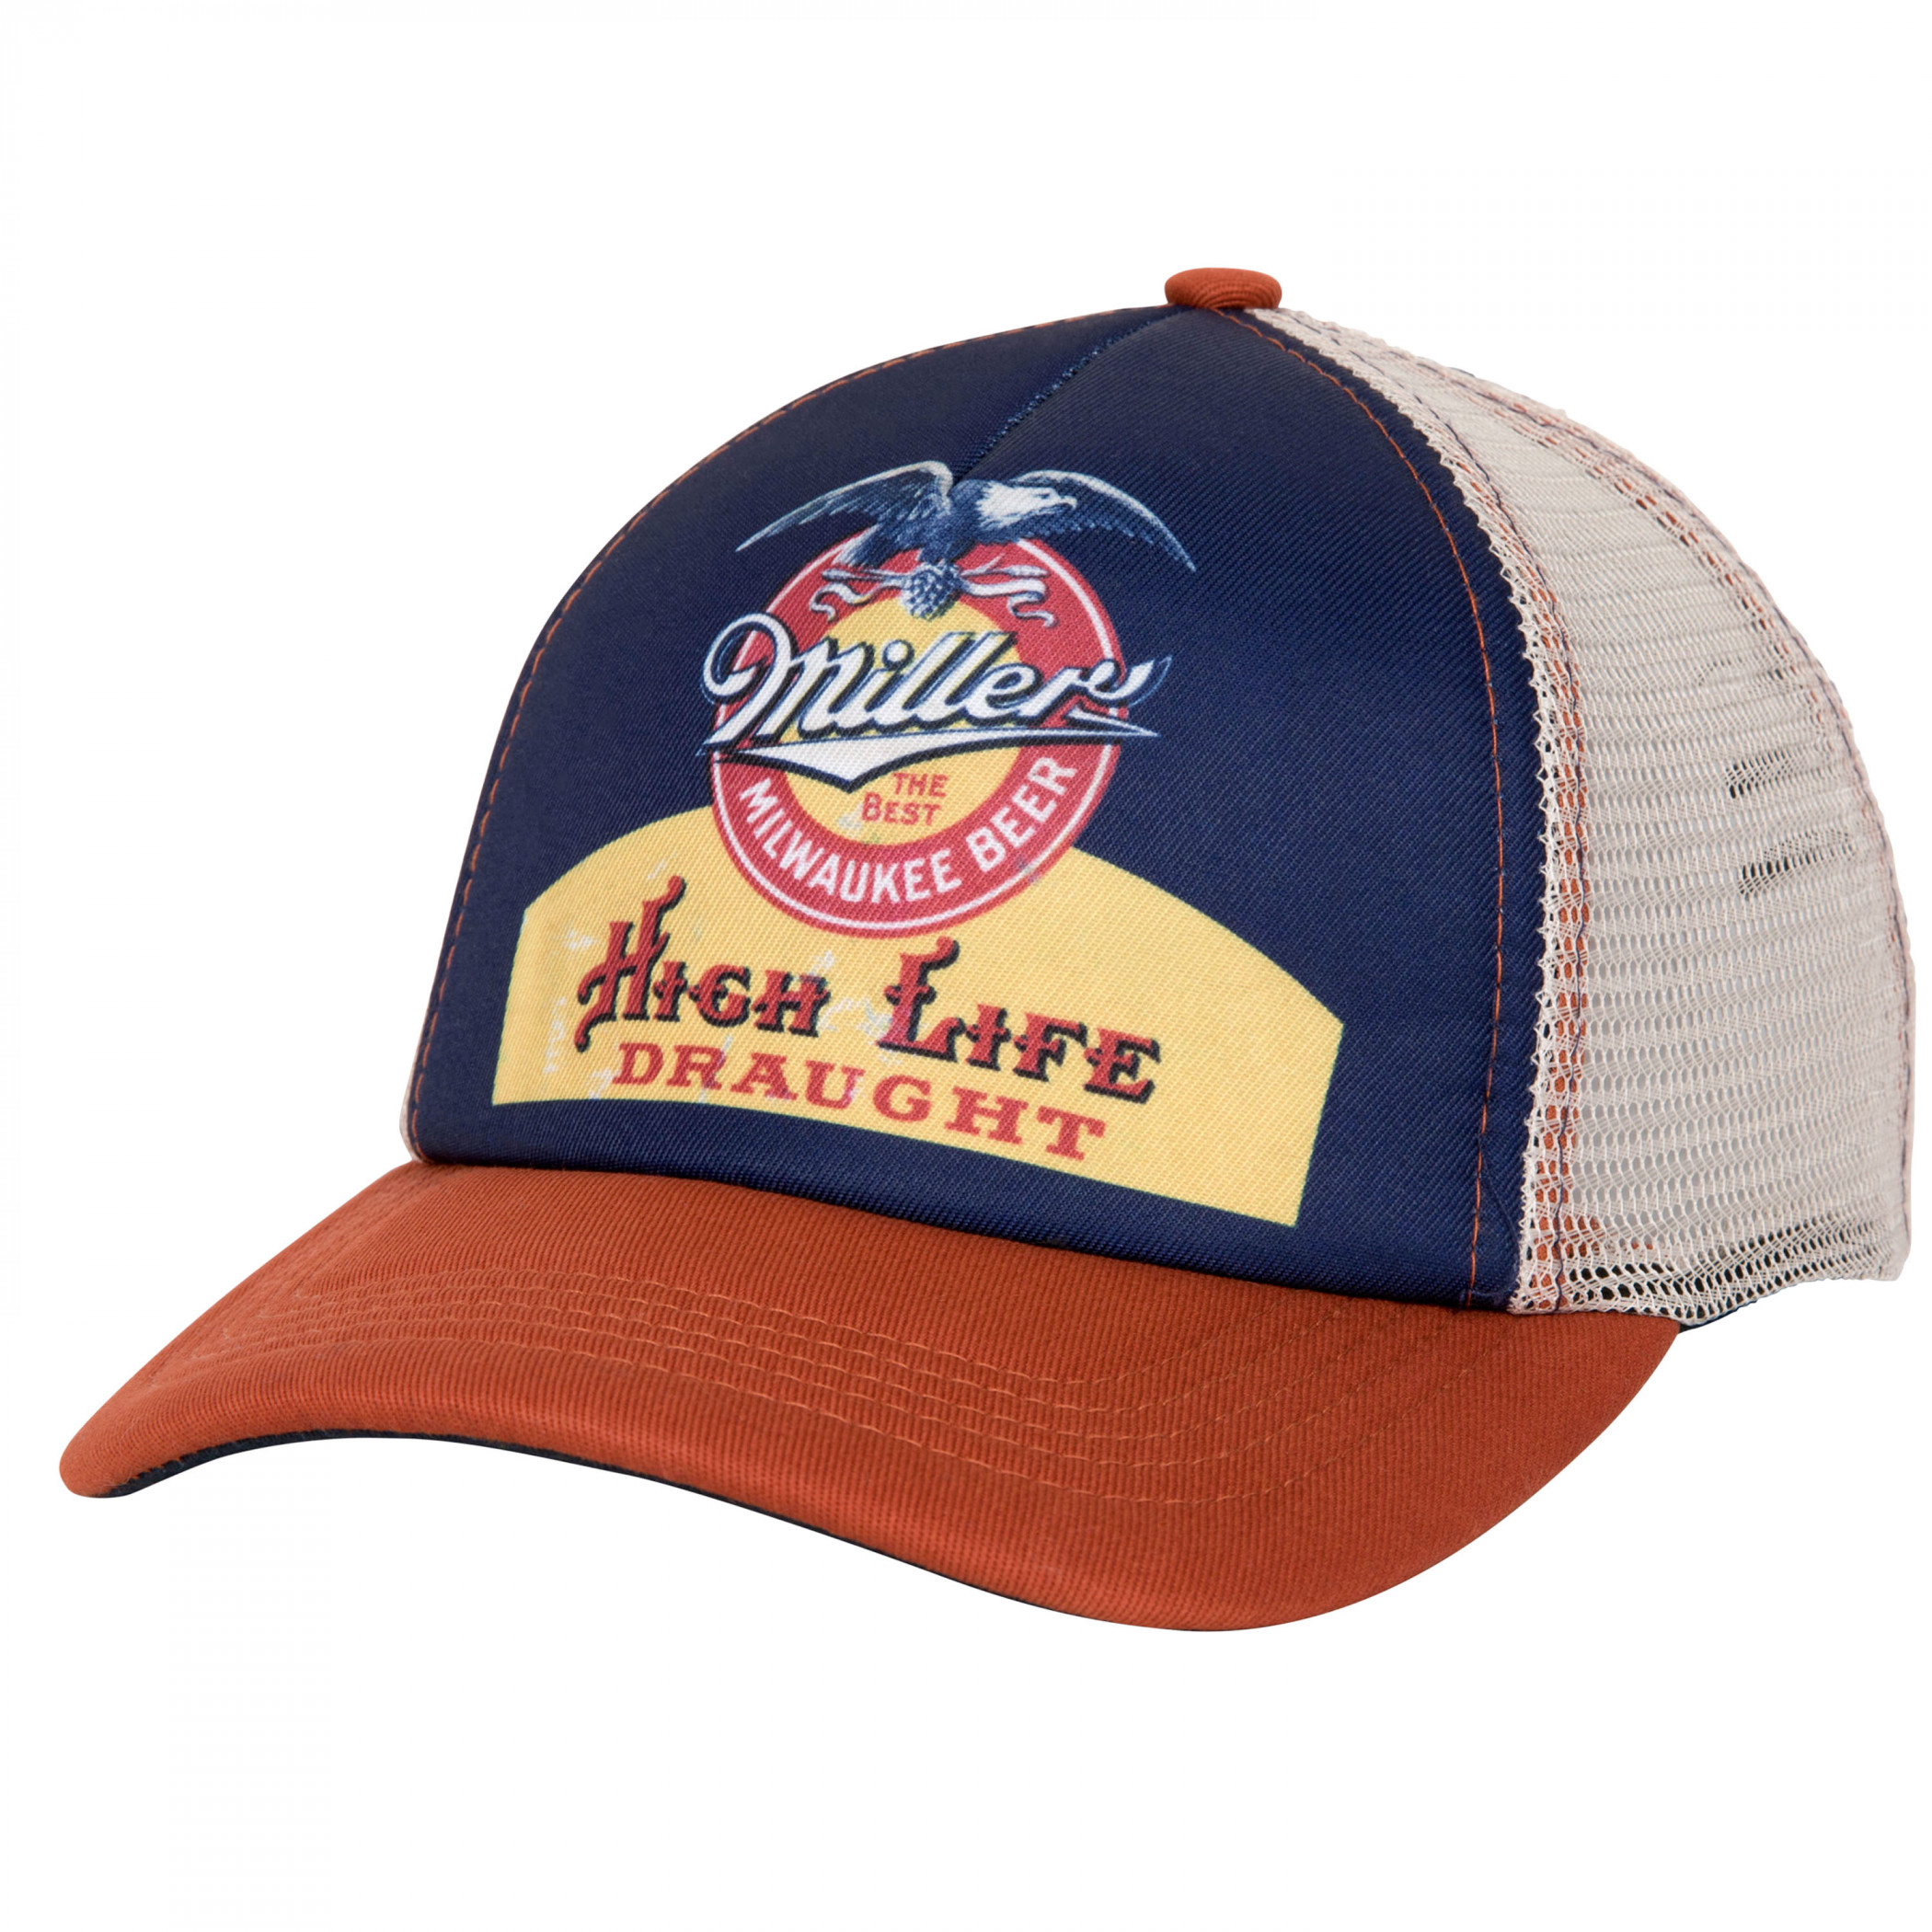 Miller High Life Vintage Label Mesh Back Snapback Hat